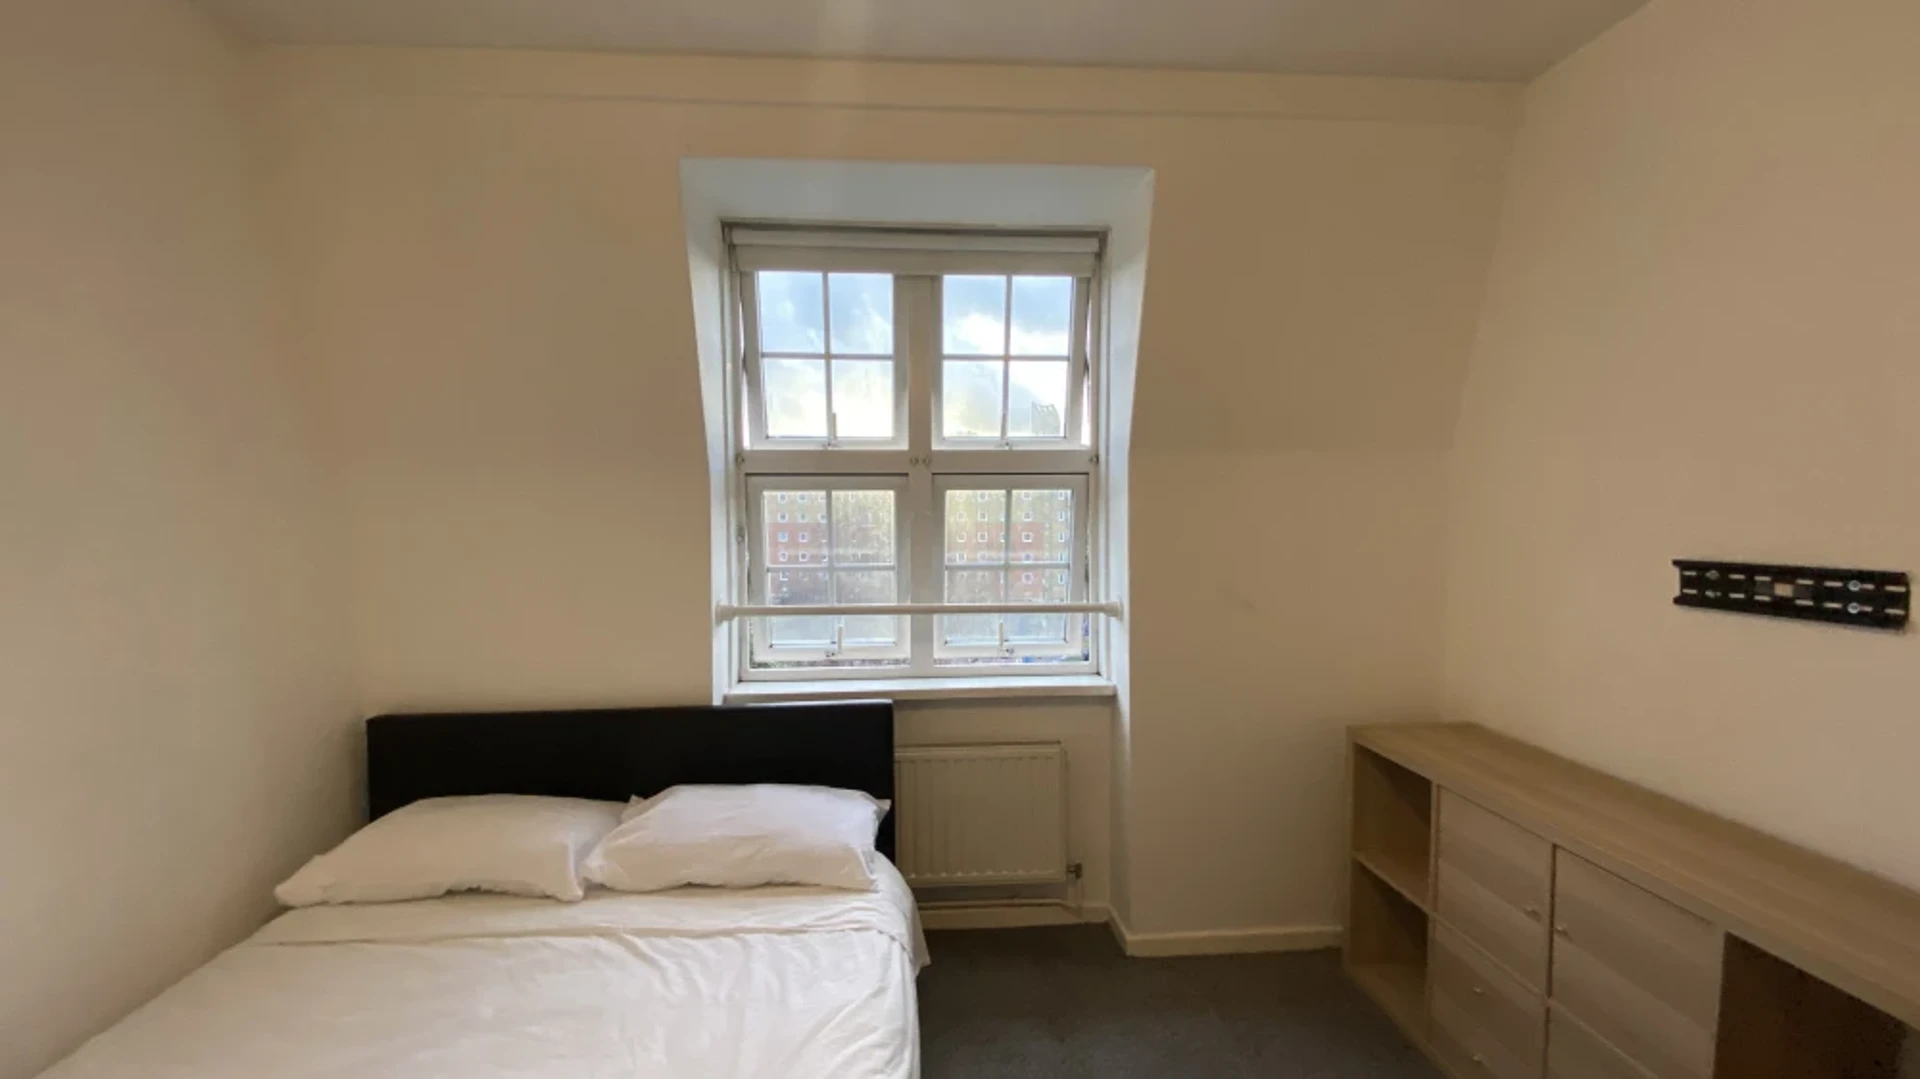 Quarto para alugar num apartamento partilhado em Londres